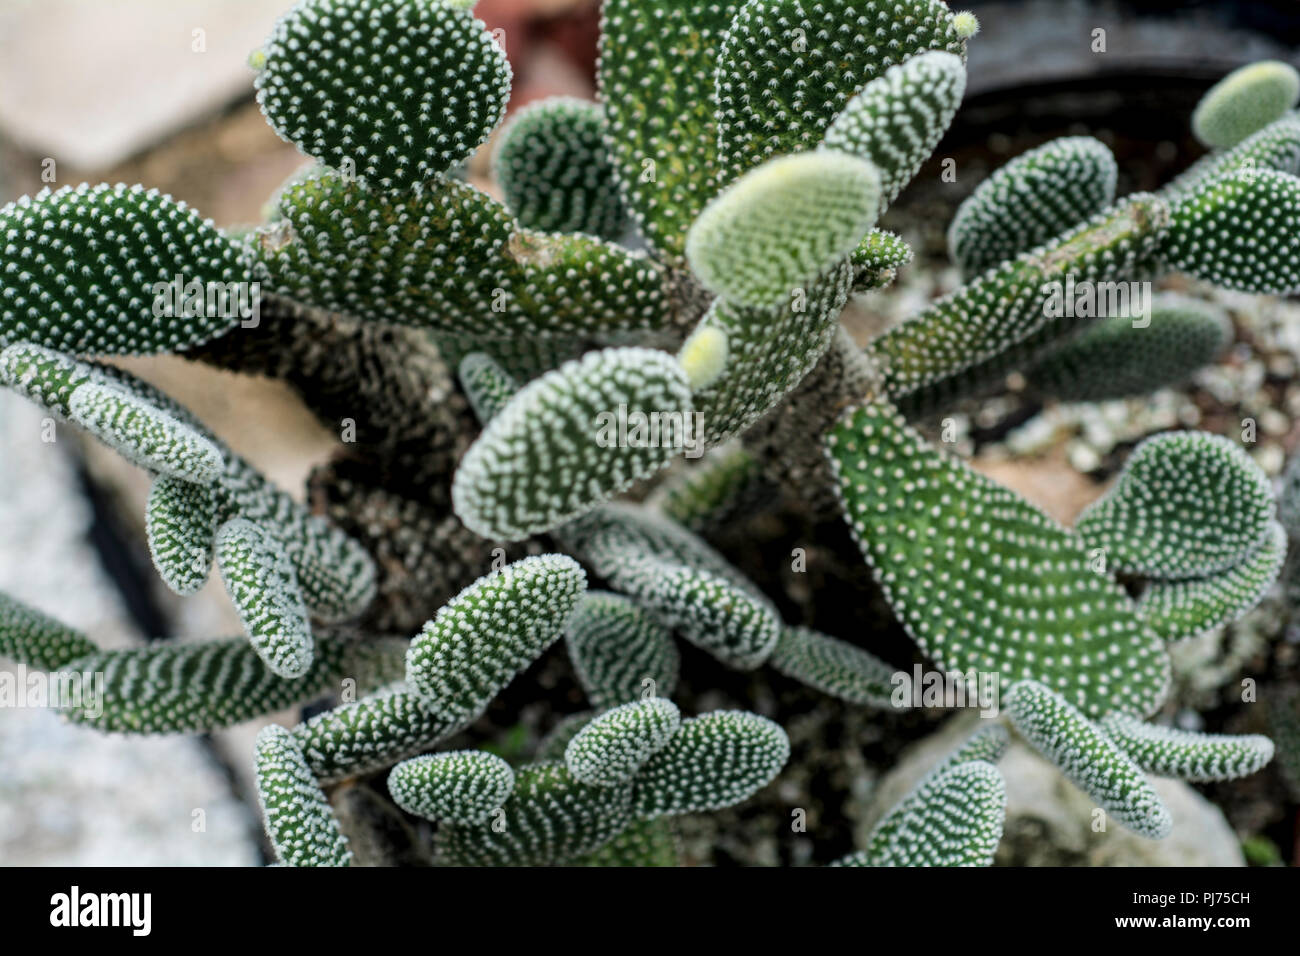 Cactus plants Stock Photo